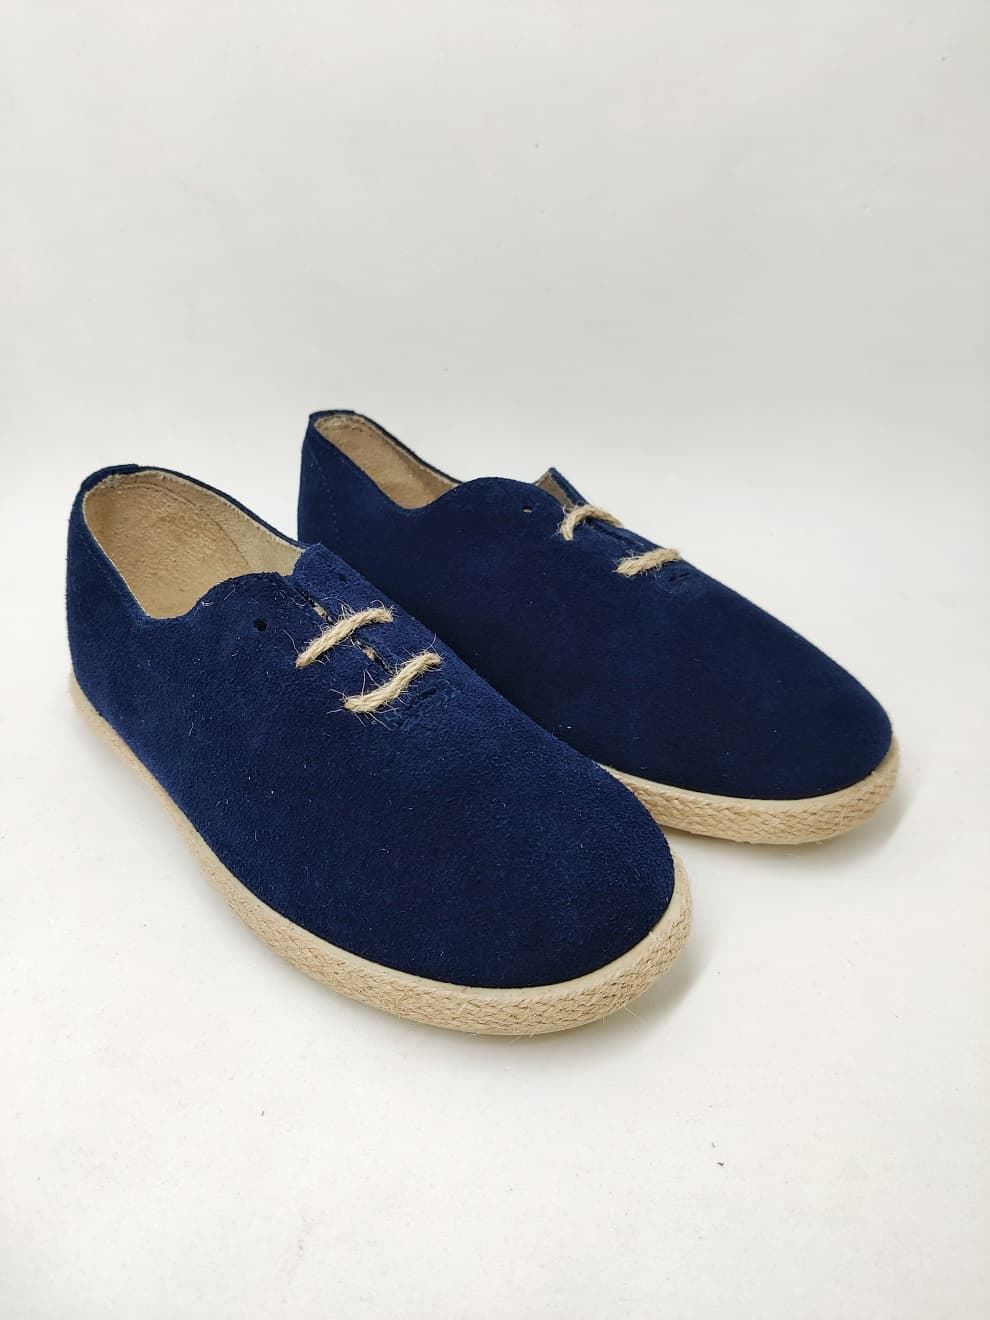 Batilas Navy Blue Suede Children's Jute Style Shoe - Image 1